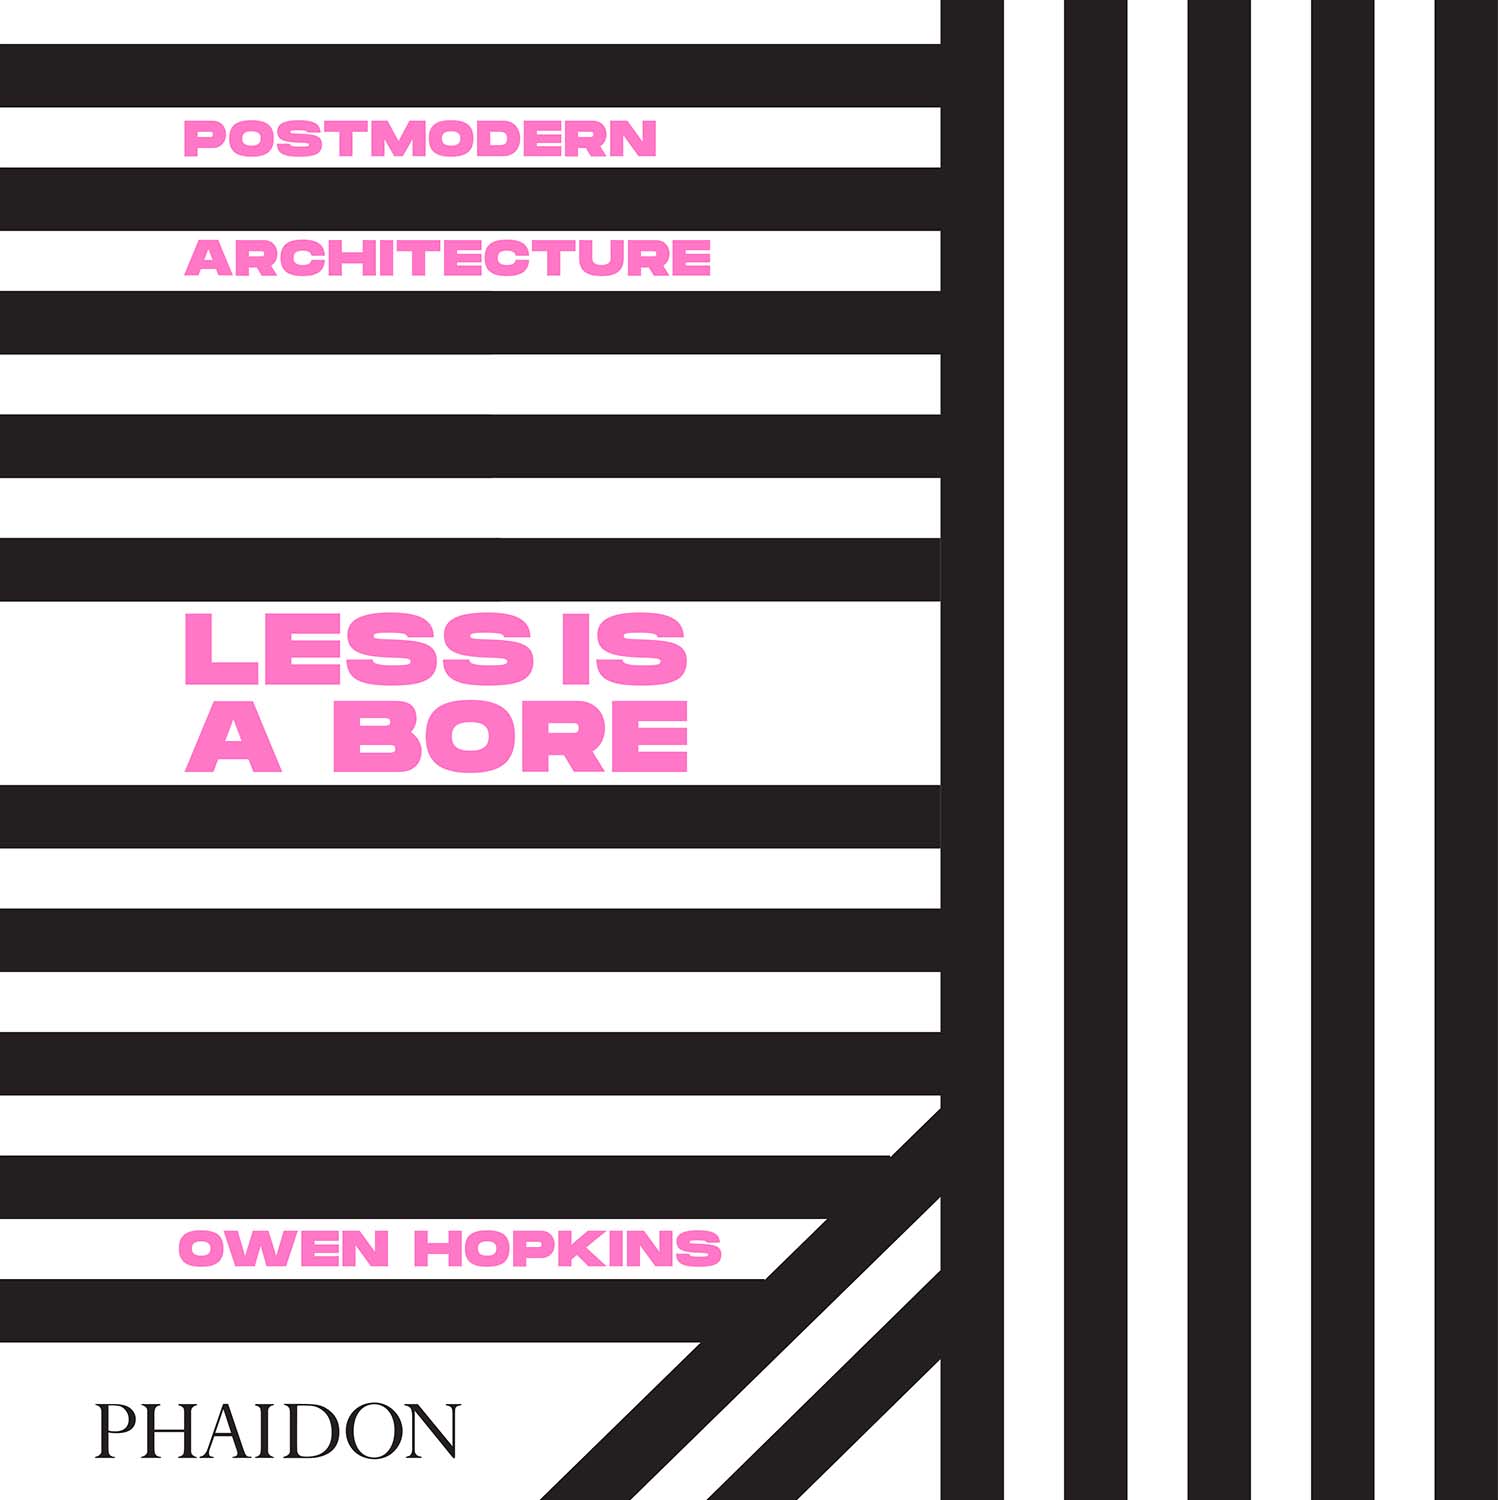 Immagine di Architettura postmoderna: Less is a Bore